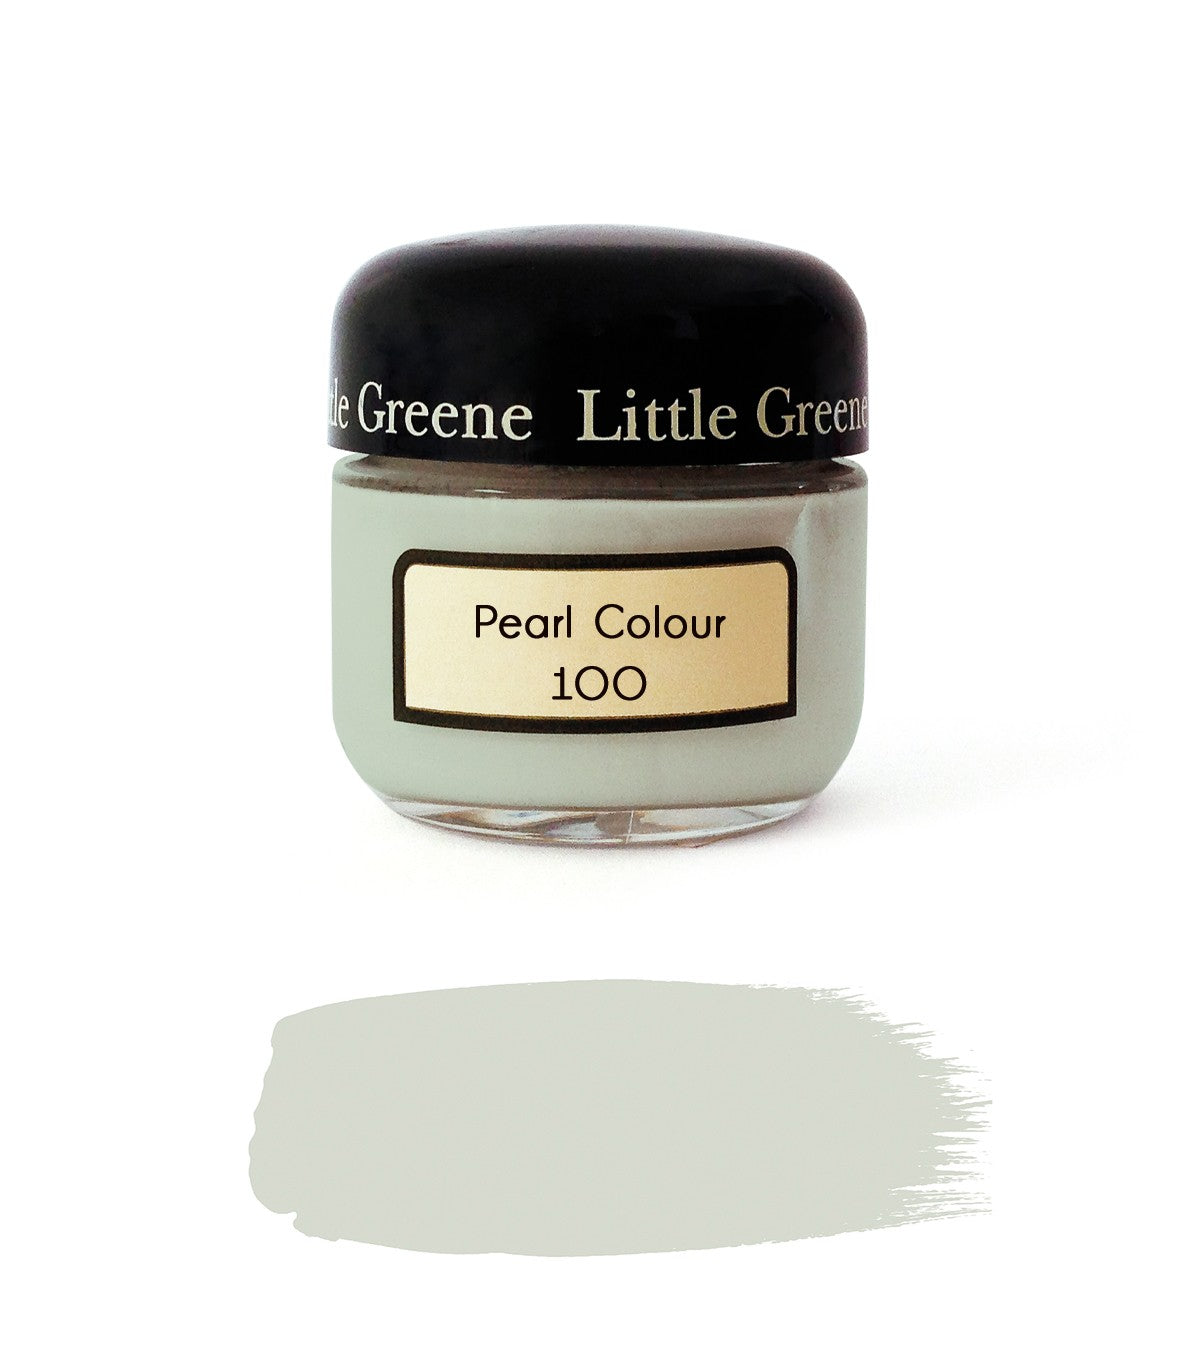 Vernice Little Greene - Colore perla (100)